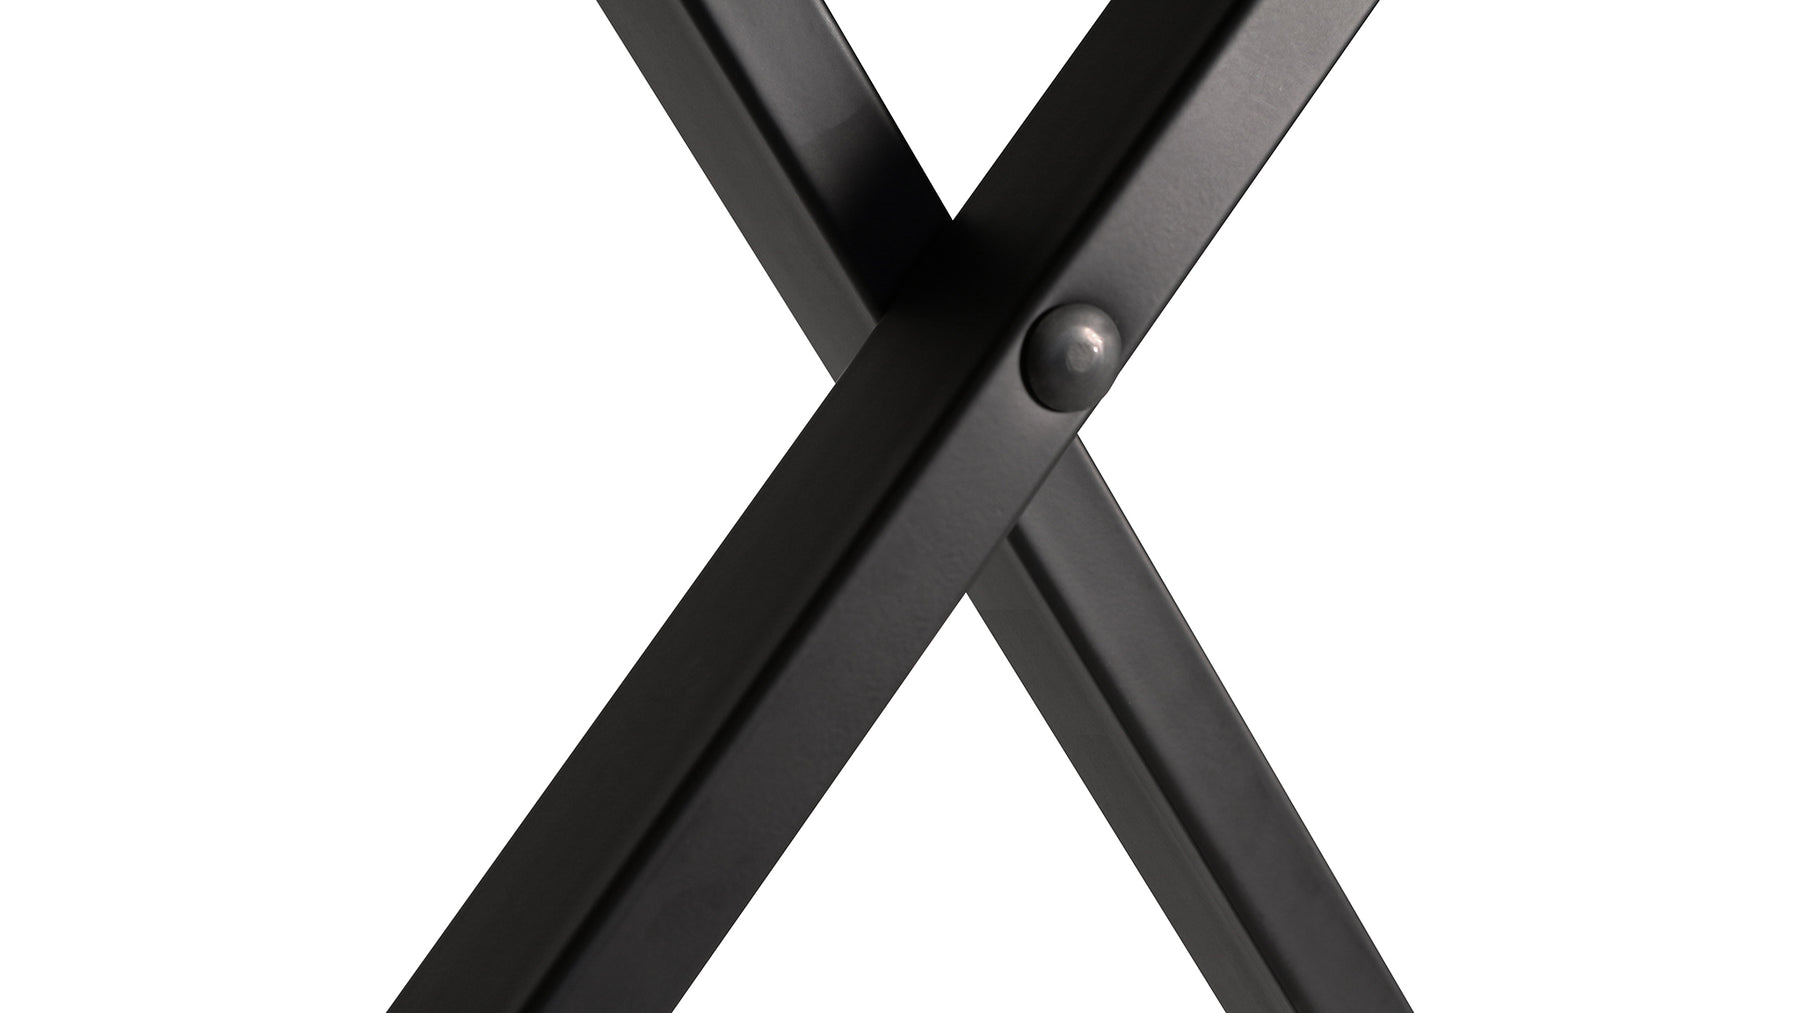 JS-XB100-B Extra Capacity (300 LBS.) Keyboard Bench (Black)